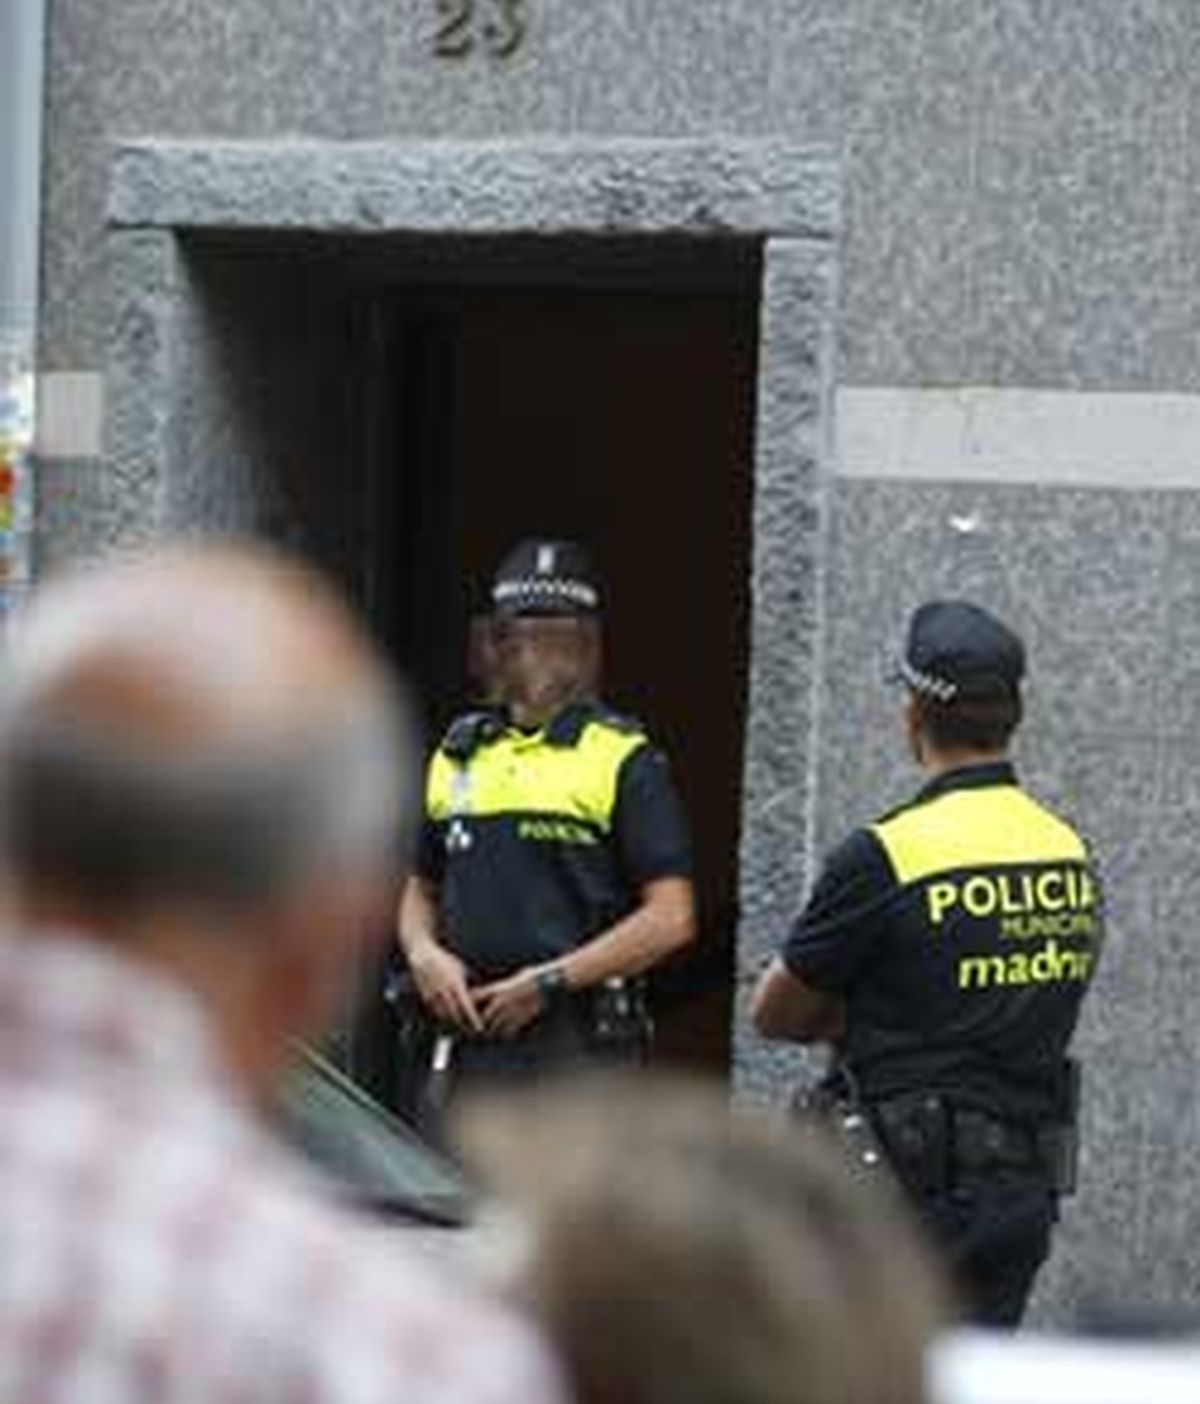 Los cuerpos de los ancianos se encontraron en el domicilio madrileño de Vallecas. FOTO: EFE